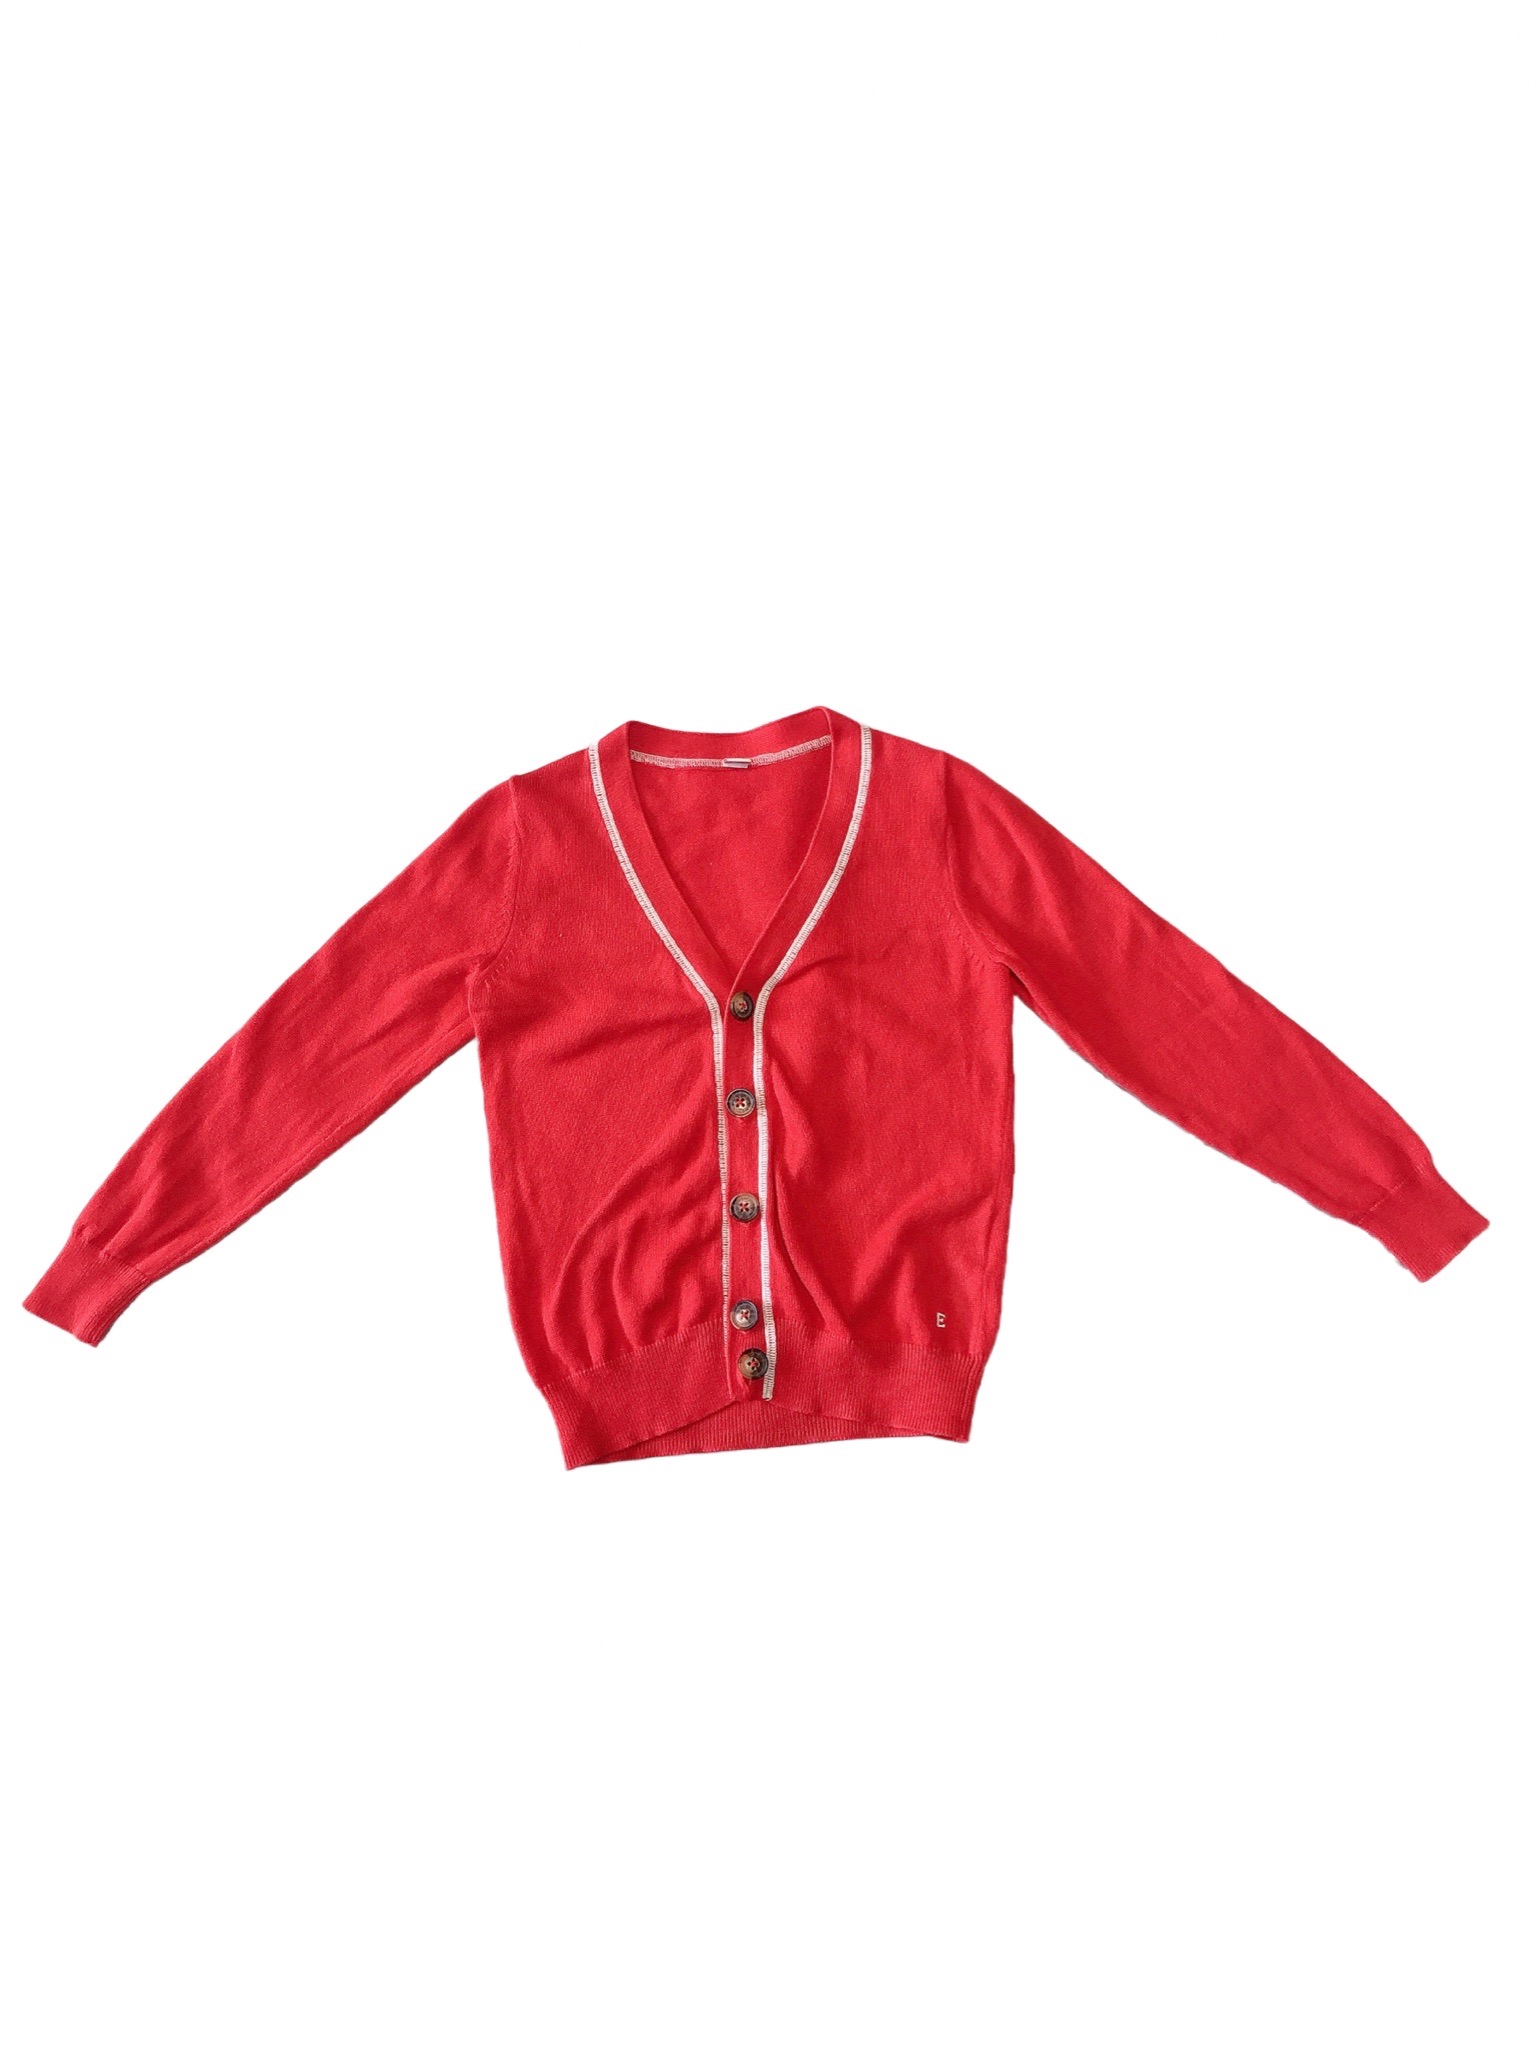 【聖誕風格】《ESPRIT》紅色針織薄長袖兒童外套(4-5Y)(110)
NT$169